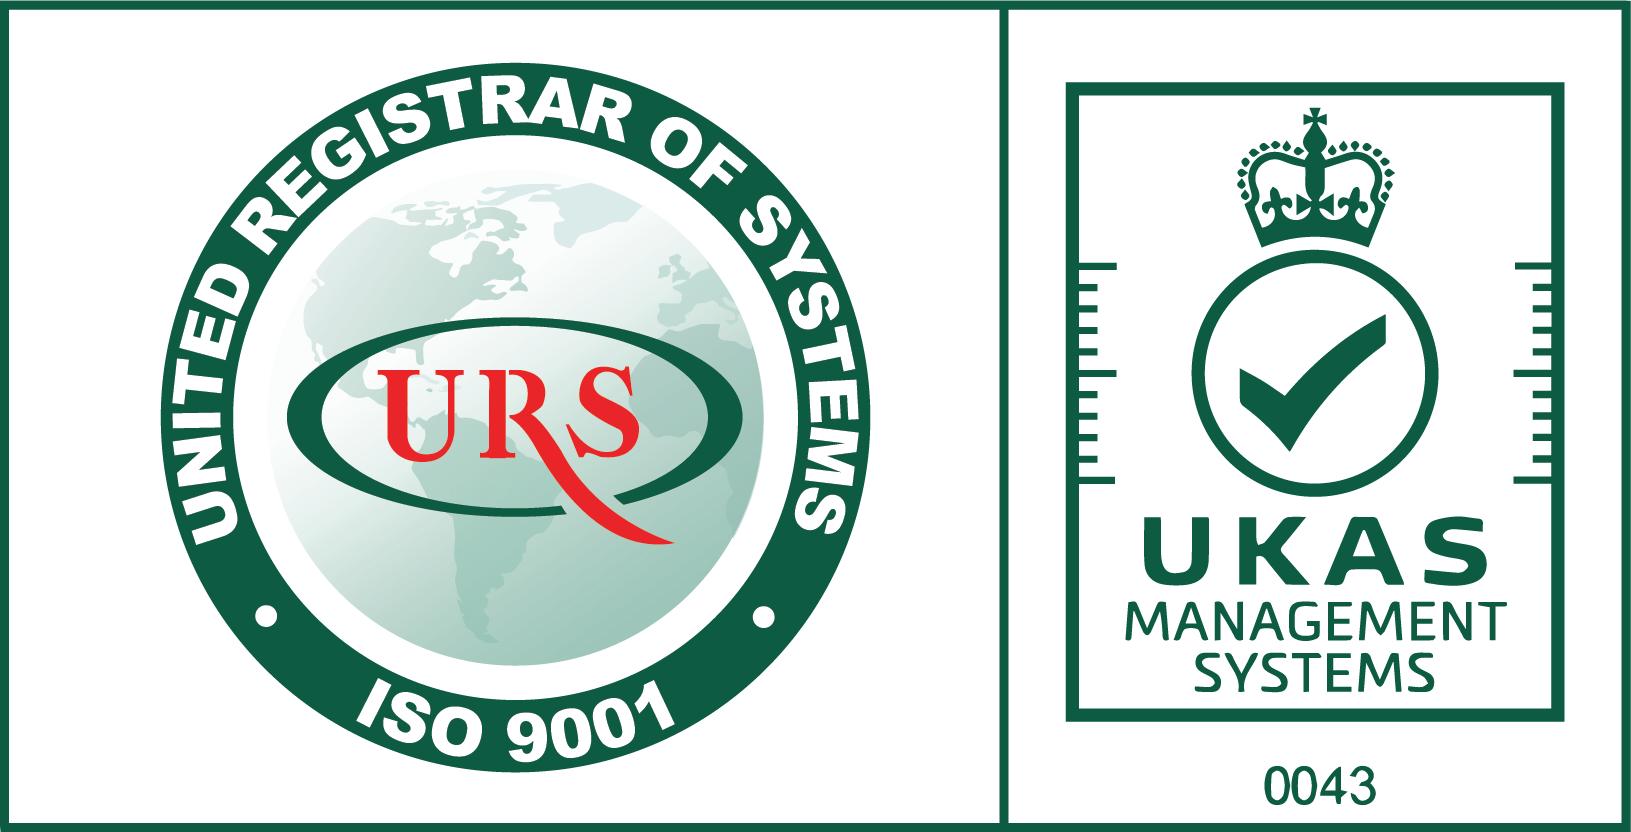 ได้รับการรับรองมาตรฐานด้านระบบบริหารงานคุณภาพ
ISO 9001:2015 จากสถาบันรับรองฯ URS